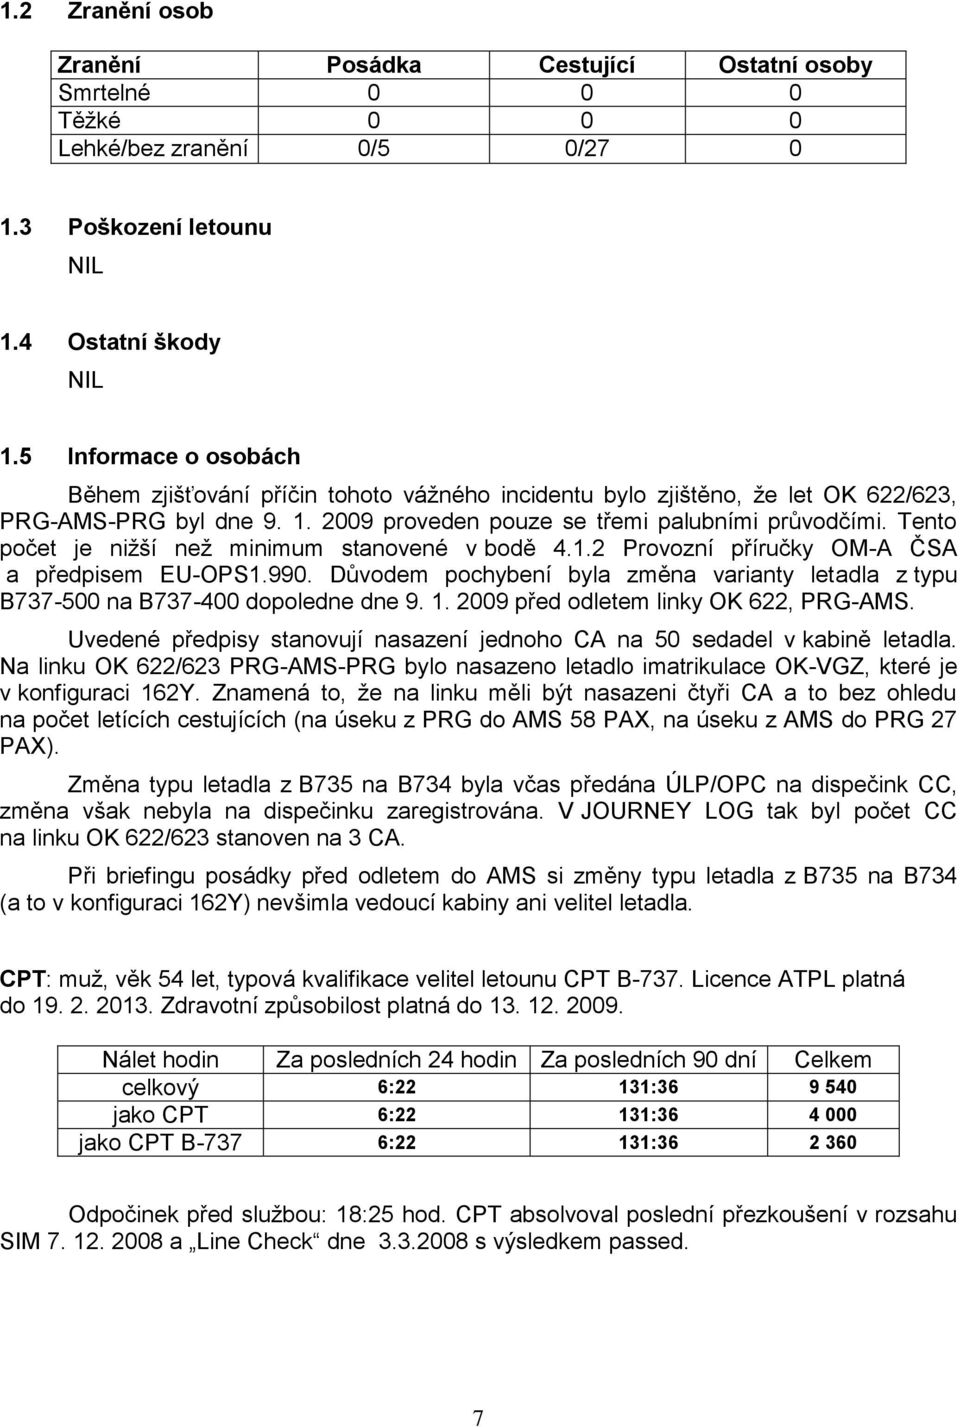 Tento počet je niţší neţ minimum stanovené v bodě 4.1.2 Provozní příručky OM-A ČSA a předpisem EU-OPS1.990. Důvodem pochybení byla změna varianty letadla z typu B737-500 na B737-400 dopoledne dne 9.